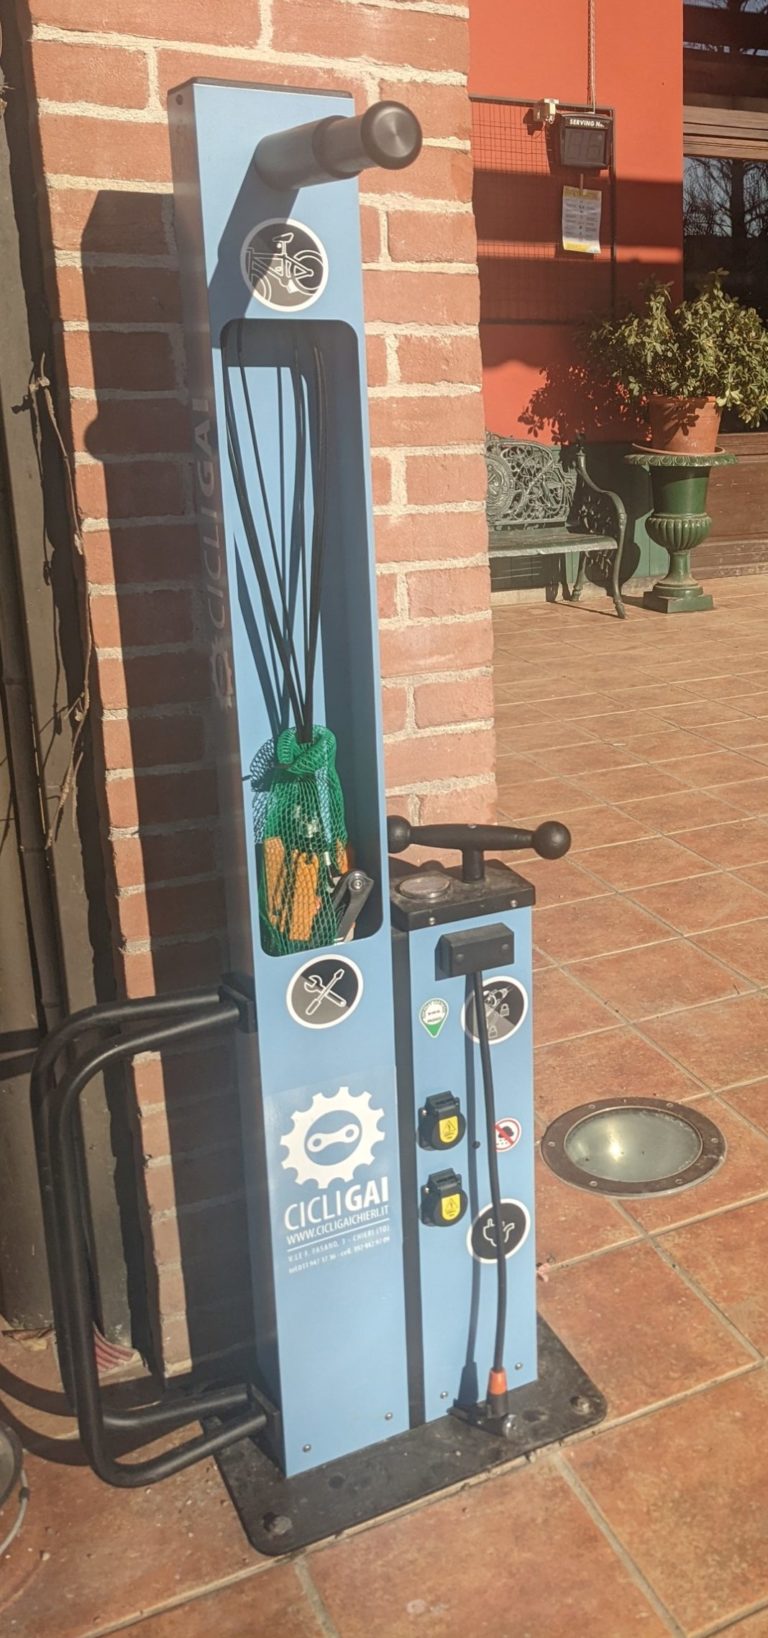 Pompa per bici gratuita - Agrigelateria San Pé Poirino